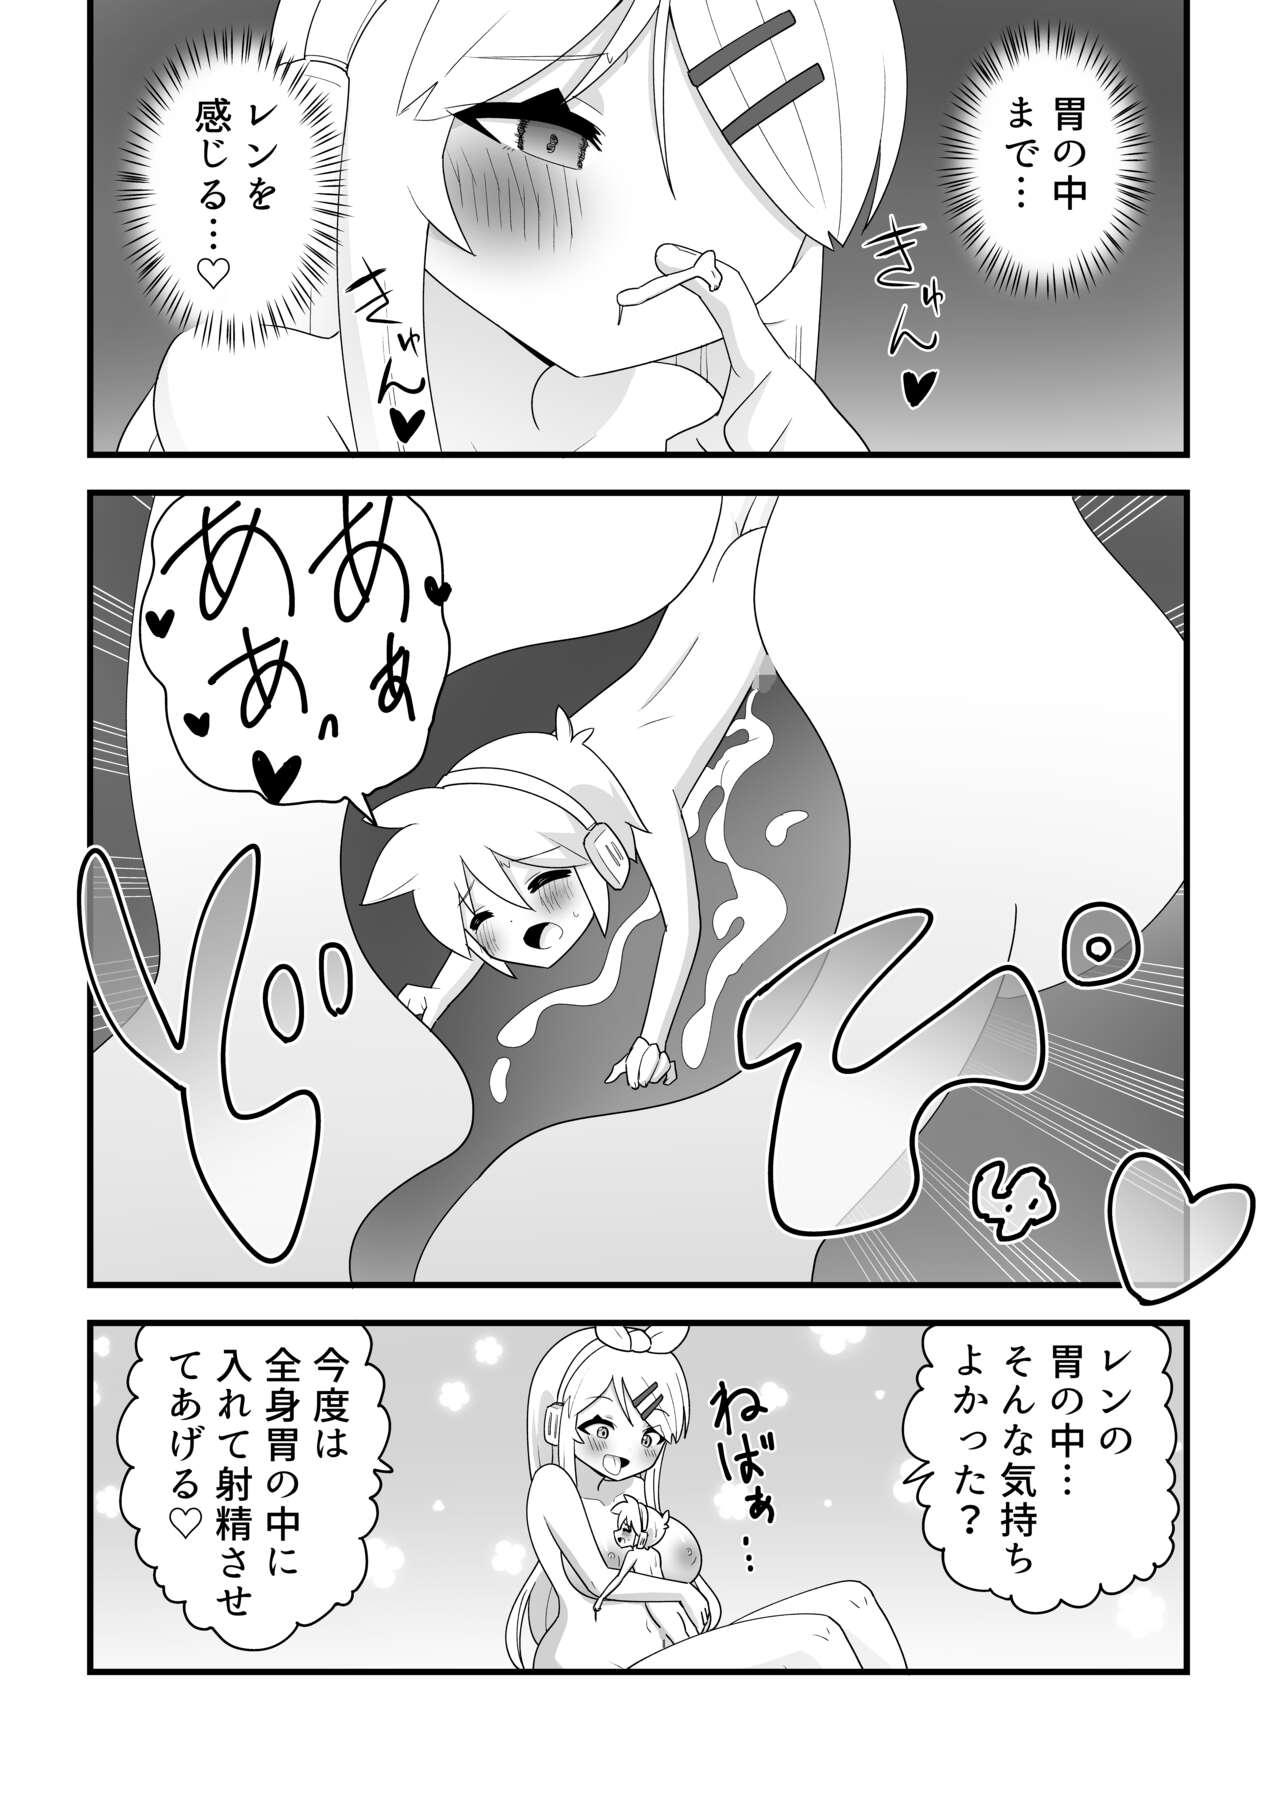 Men Karada kakusa rin ga ren o perorero shite marunomi shi chau manga - Vocaloid Transexual - Page 2